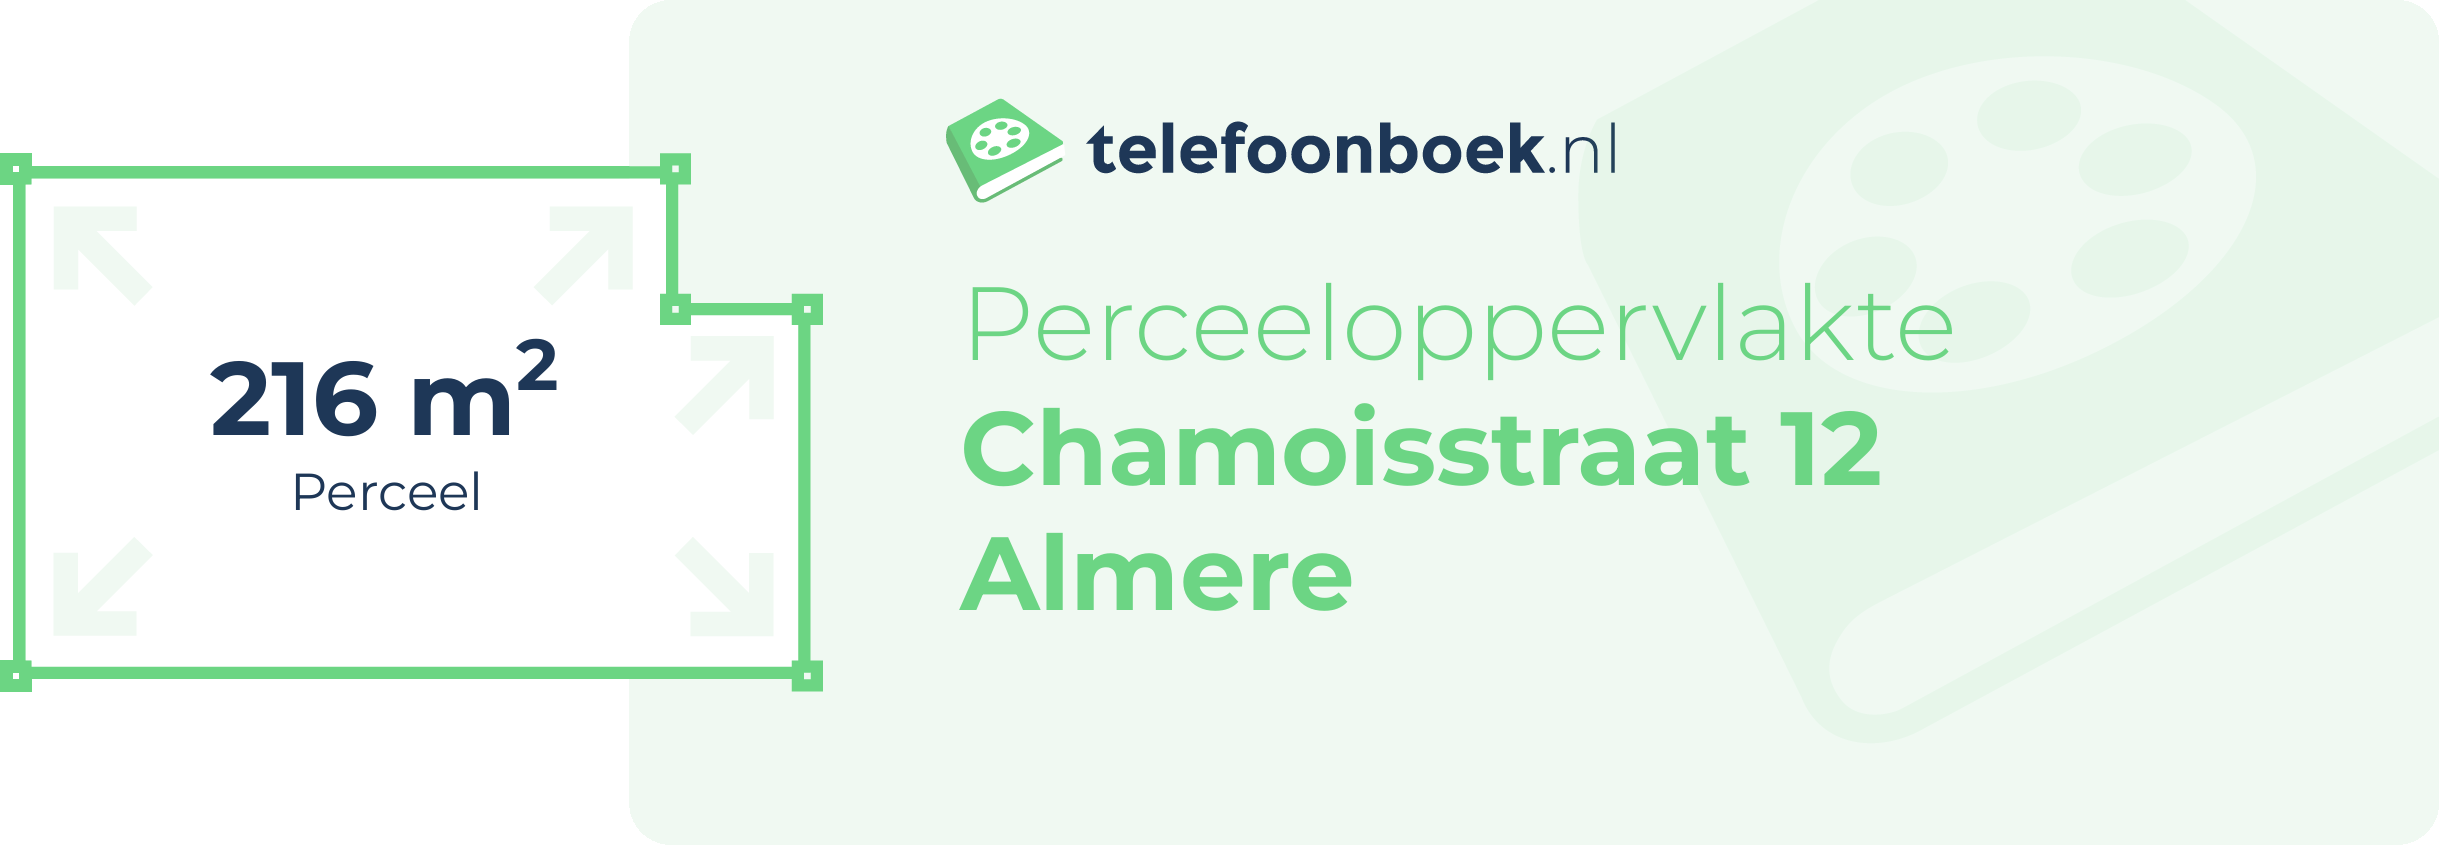 Perceeloppervlakte Chamoisstraat 12 Almere